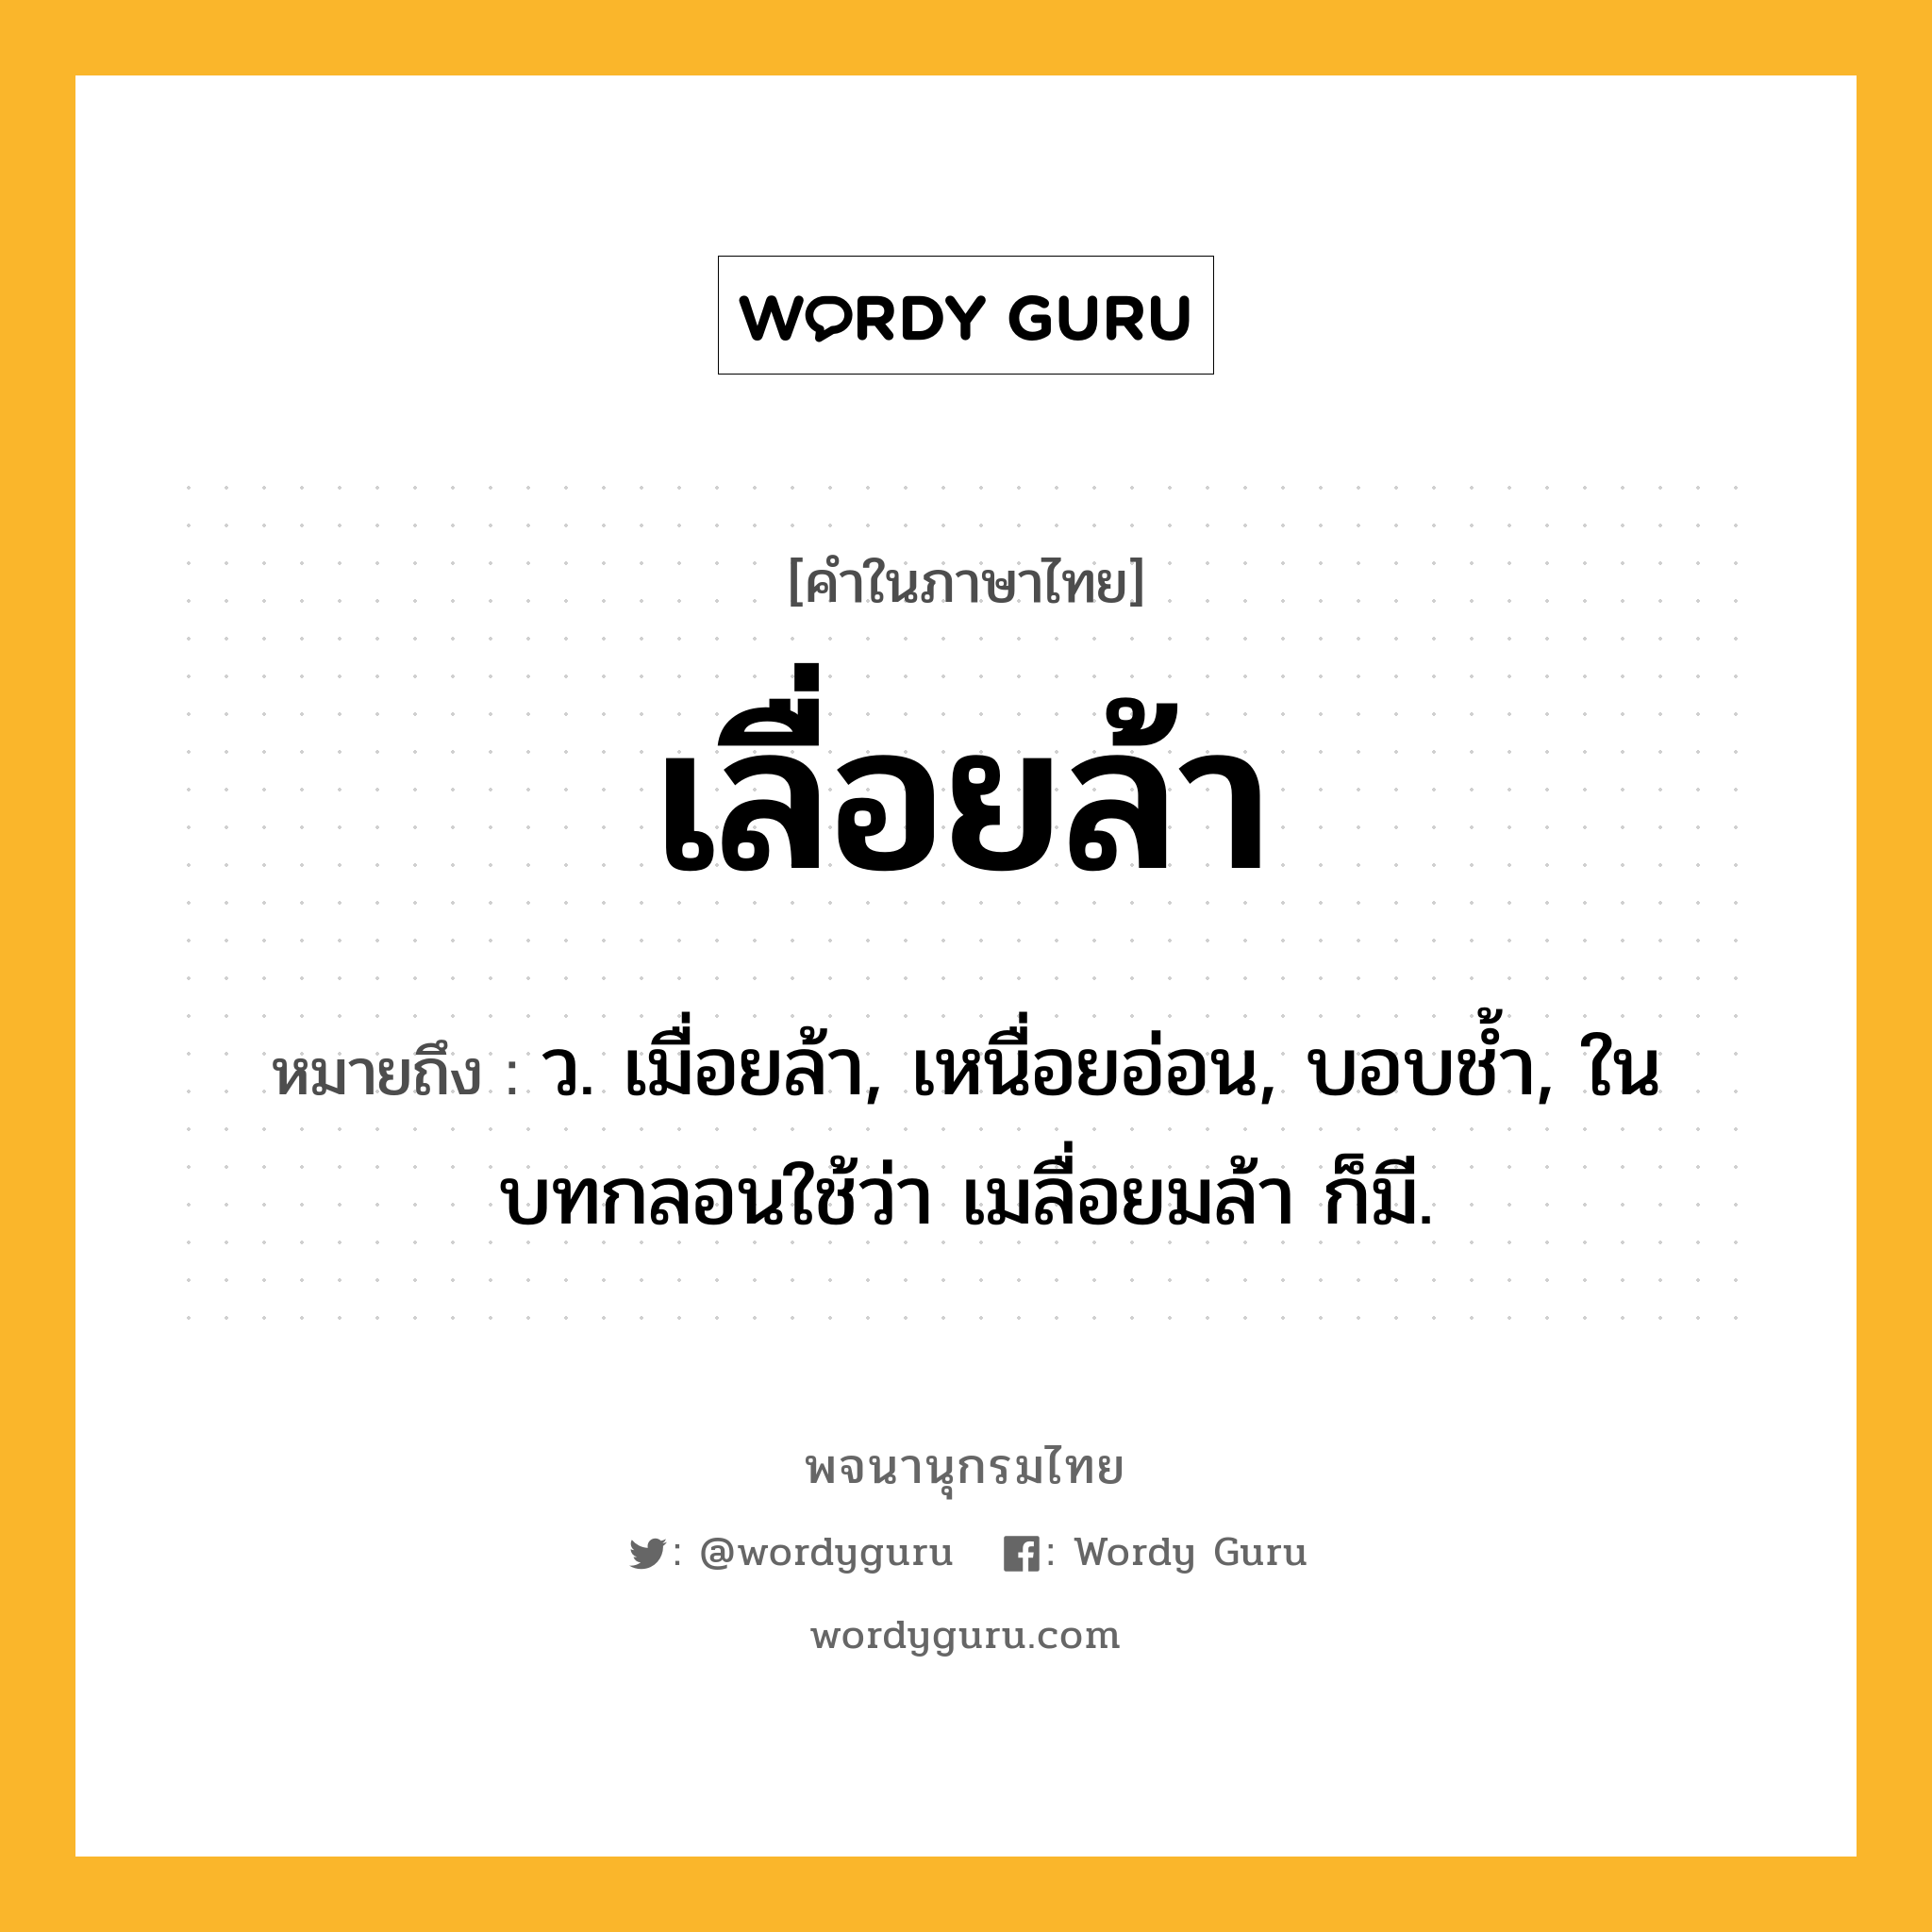 เลื่อยล้า ความหมาย หมายถึงอะไร?, คำในภาษาไทย เลื่อยล้า หมายถึง ว. เมื่อยล้า, เหนื่อยอ่อน, บอบชํ้า, ในบทกลอนใช้ว่า เมลื่อยมล้า ก็มี.